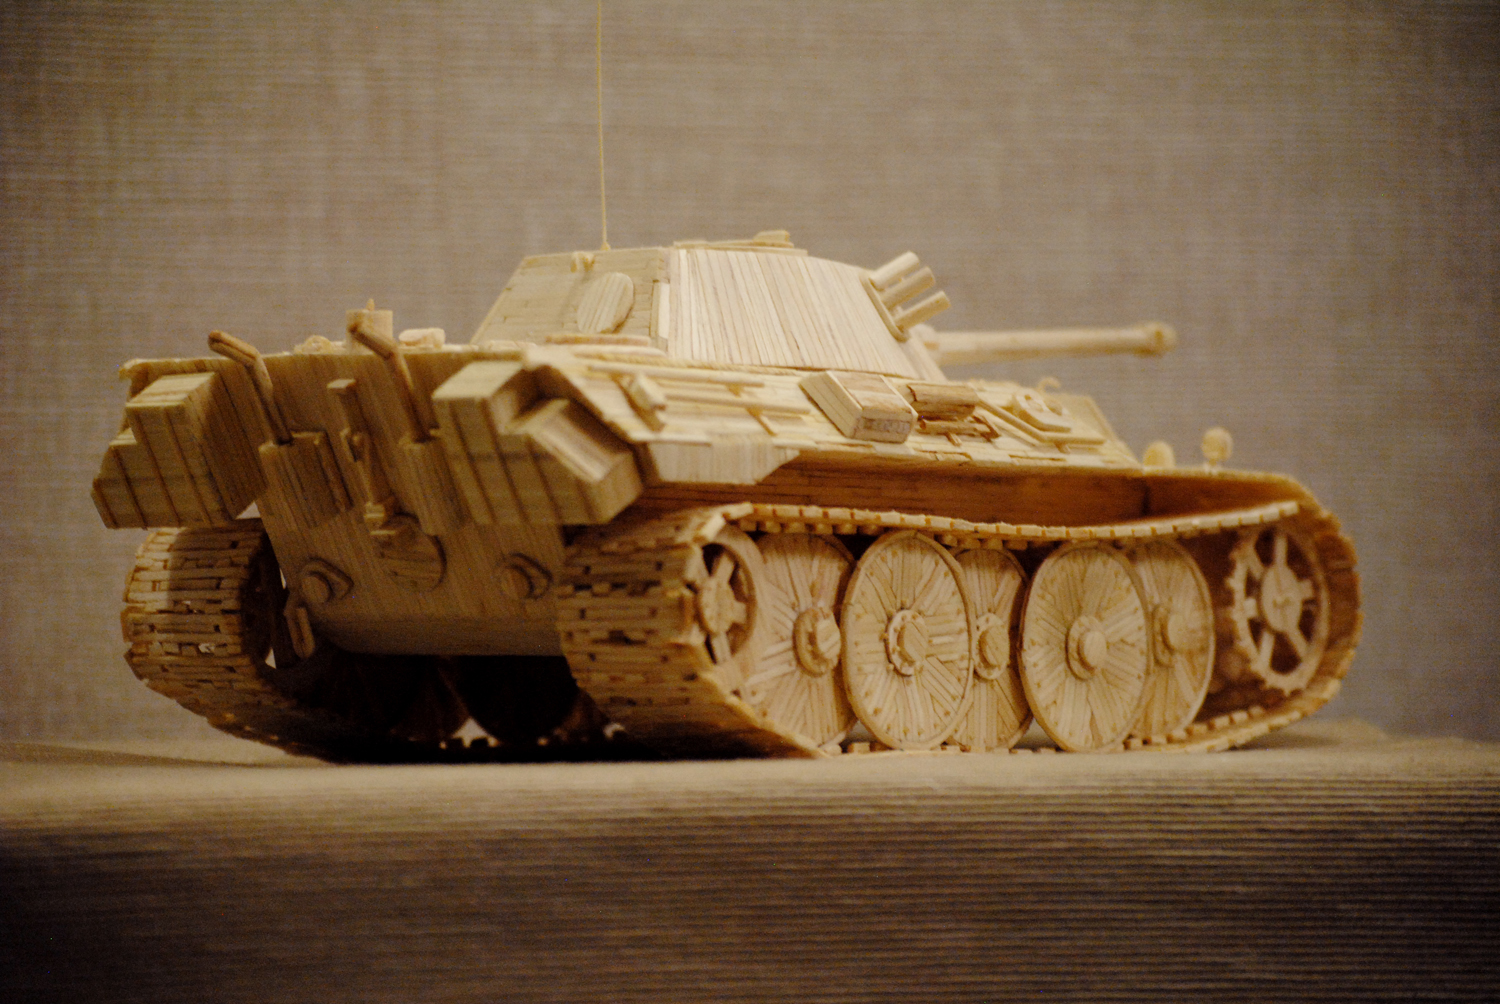 Поделка танк своими руками из картона: пошаговые мастер-классы с фото, видео